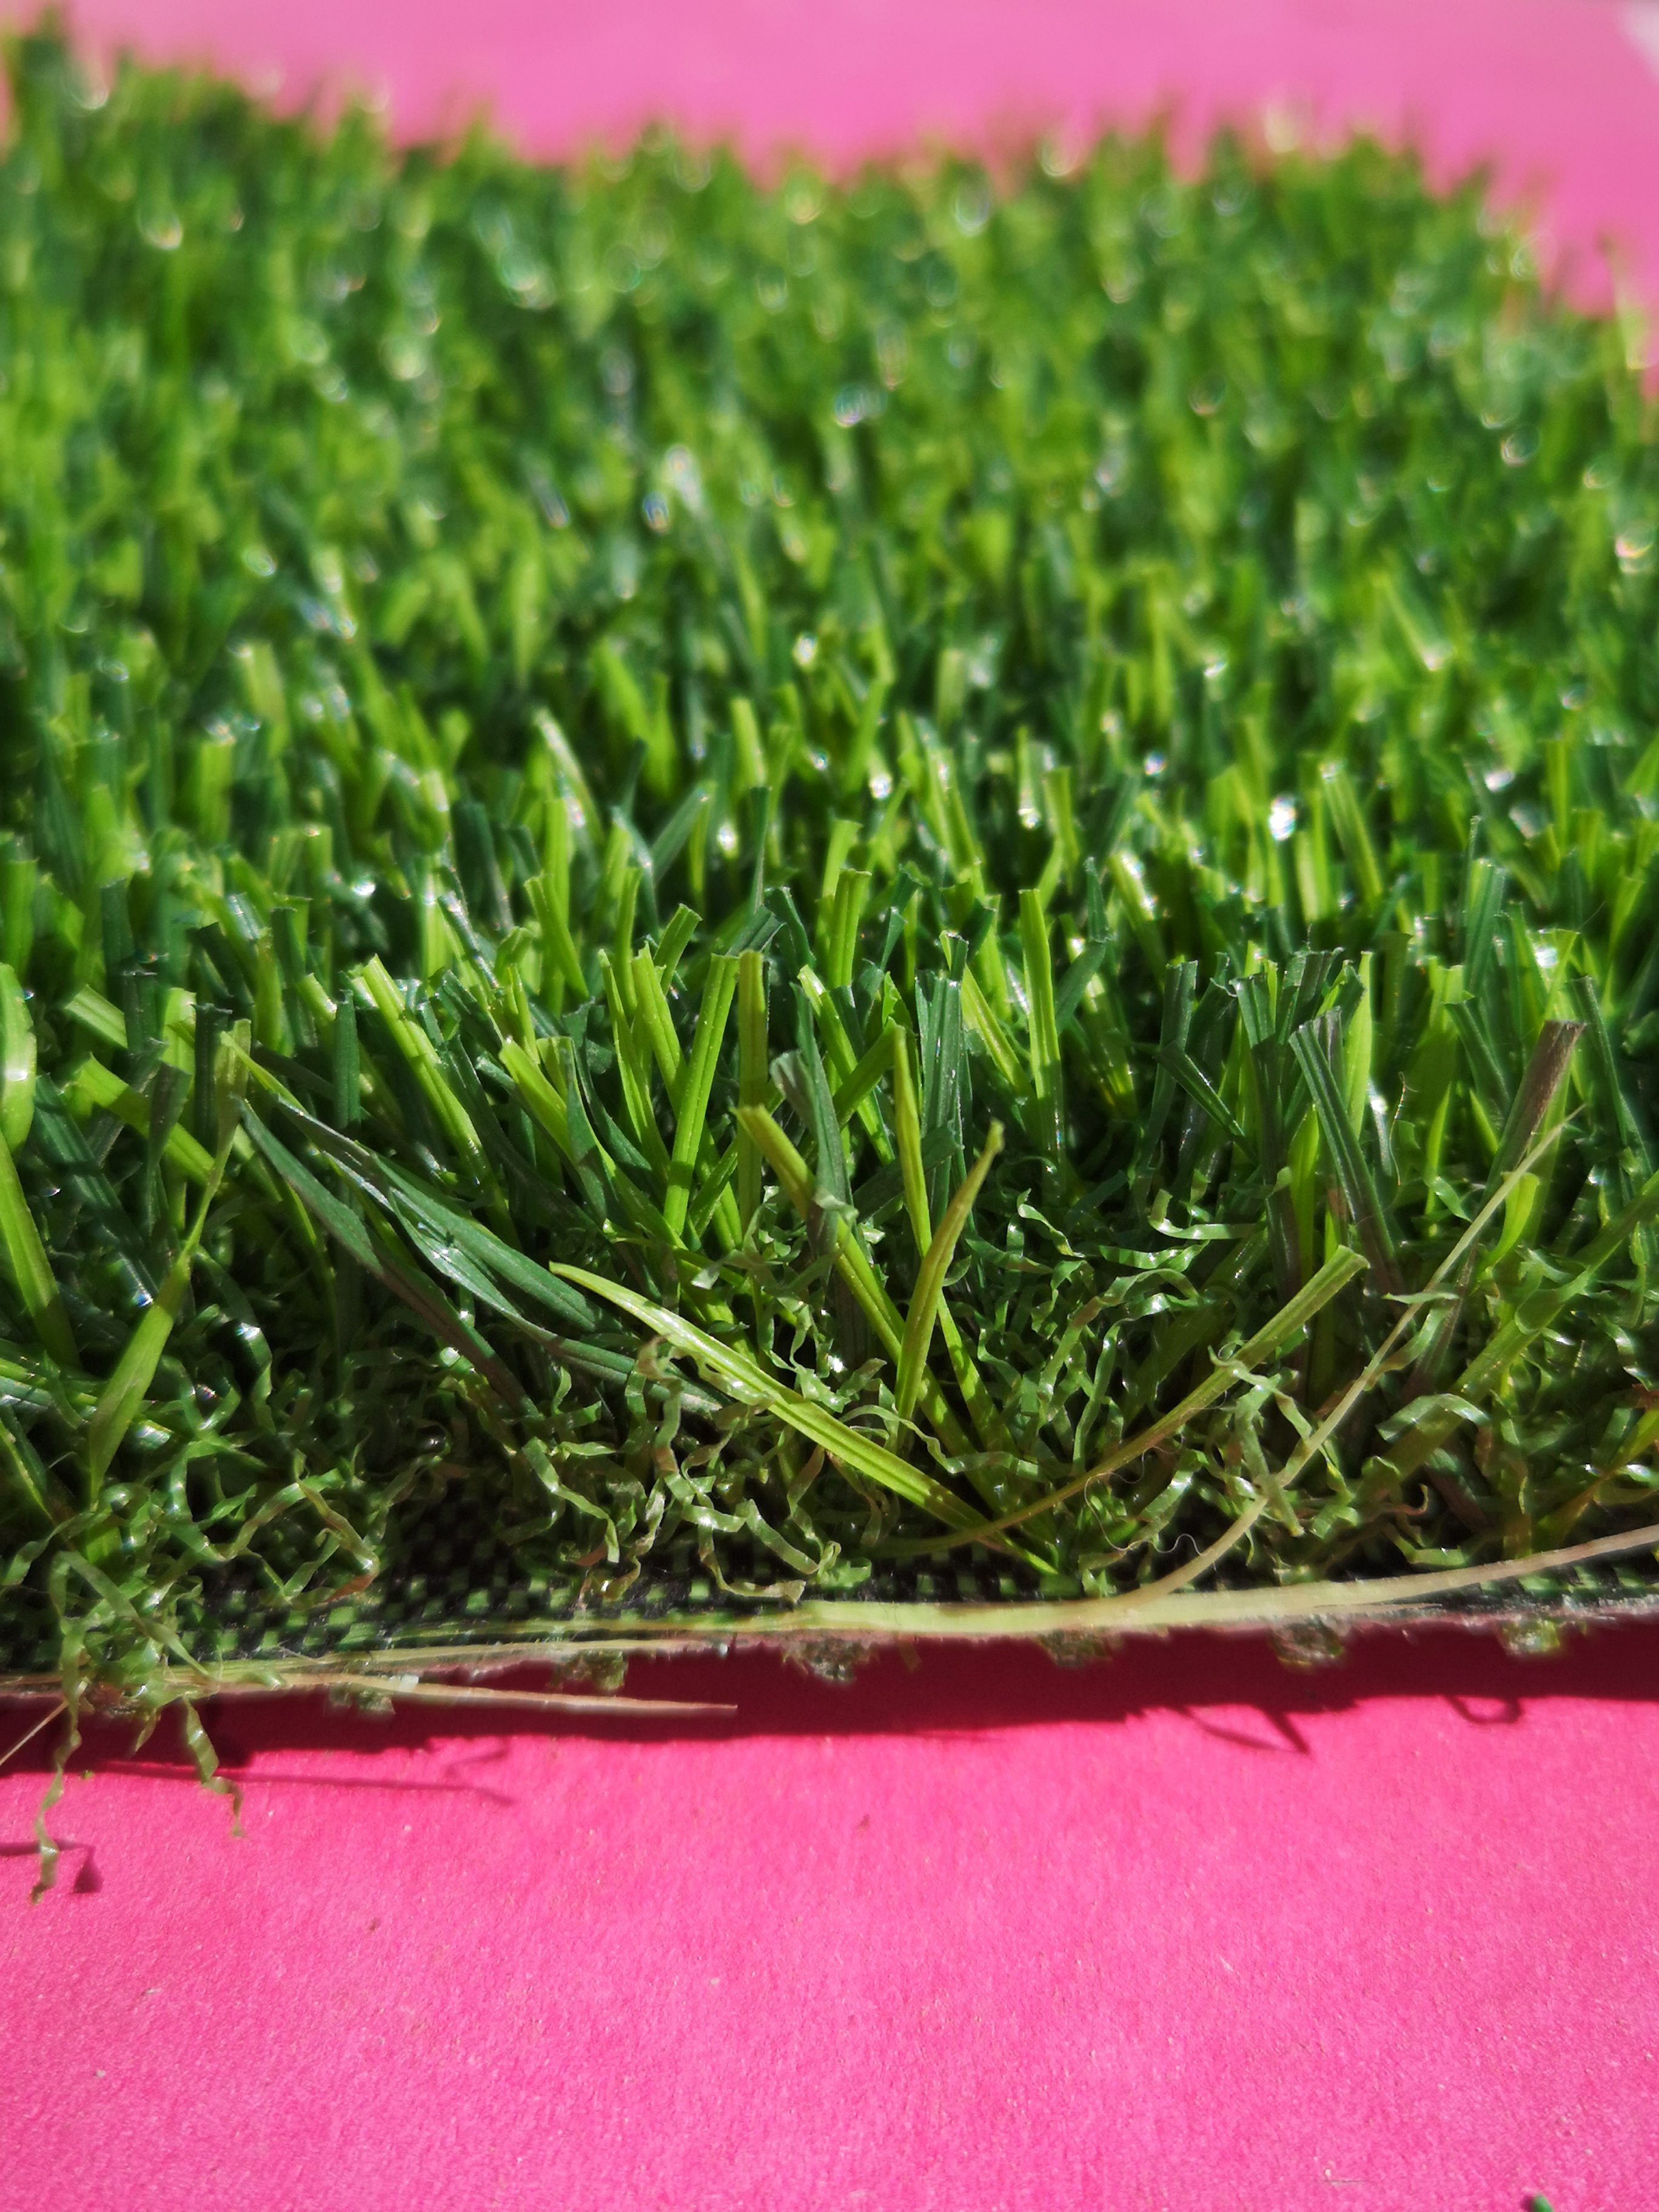 青叶牌仿真草坪QY155型草坪园林绿化草皮图片